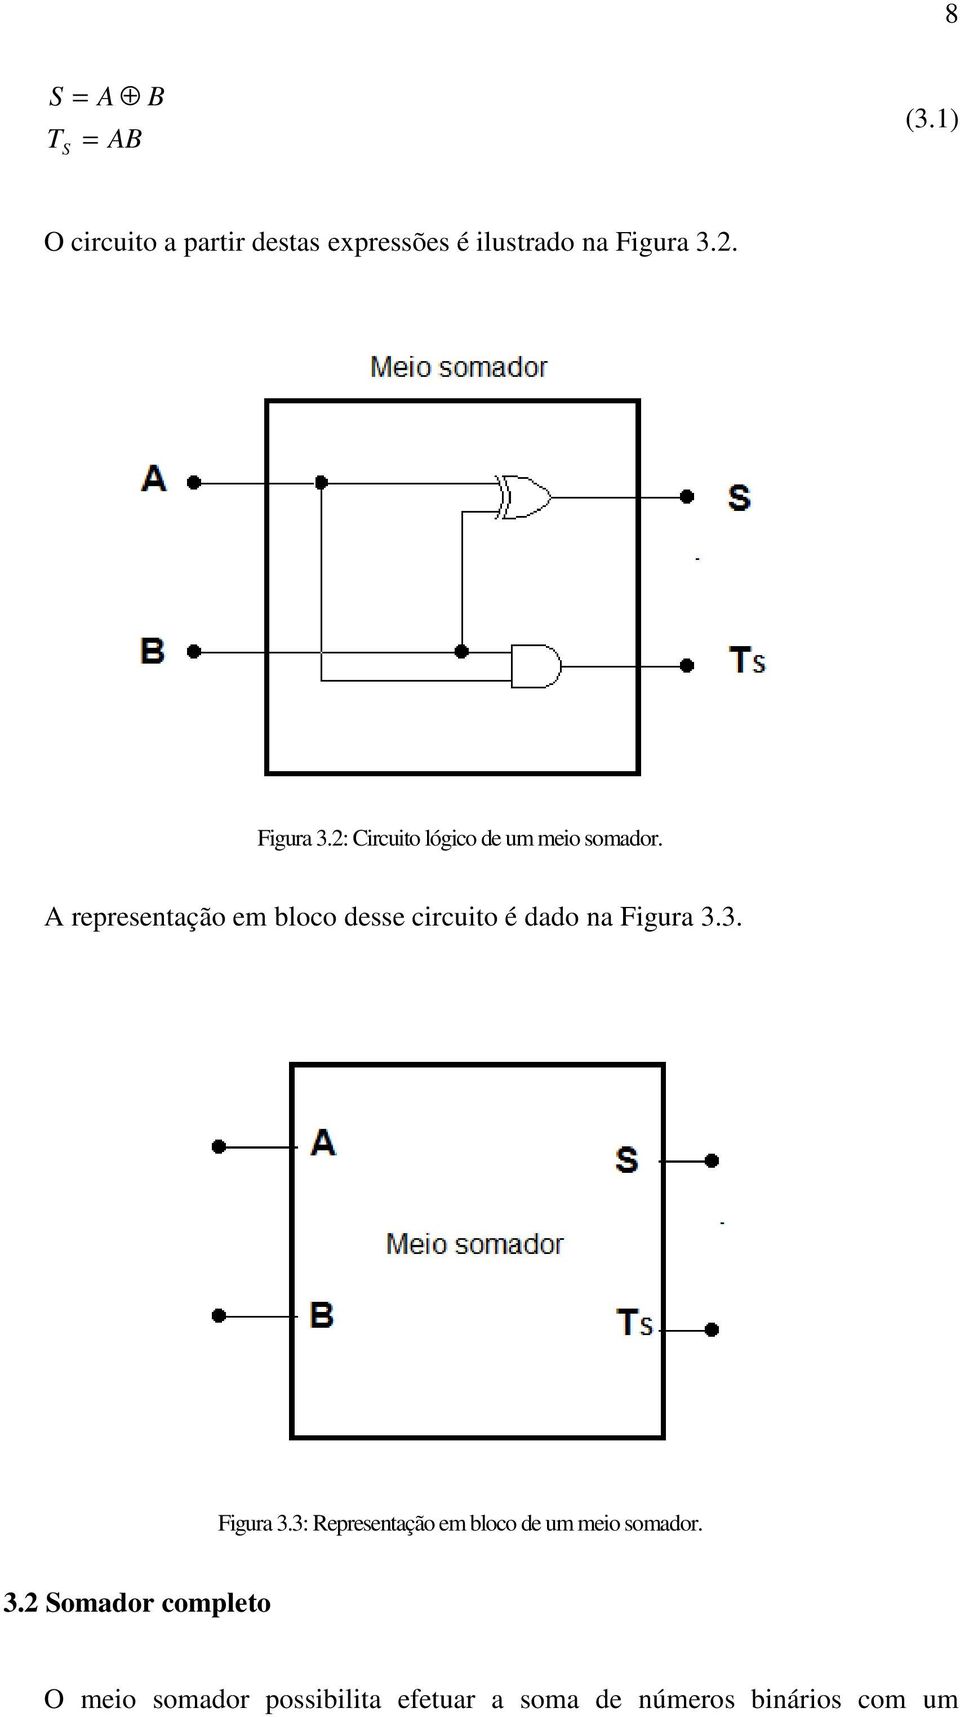 A representação em bloco desse circuito é dado na Figura 3.